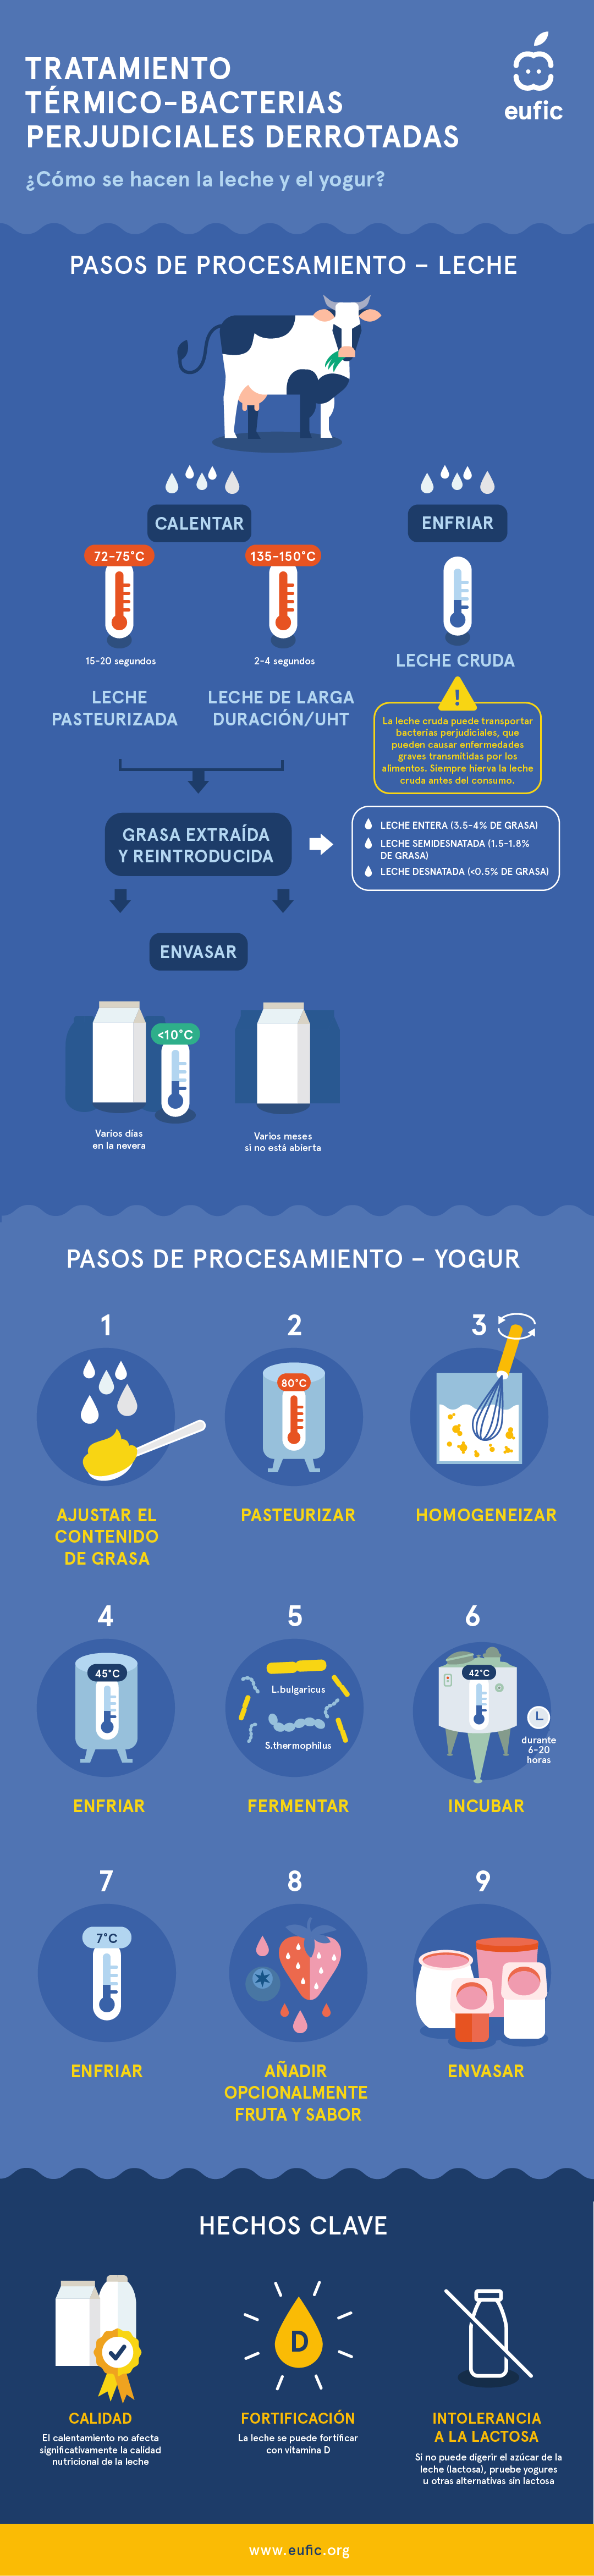 Los pasos de procesamiento de la leche y el yogur